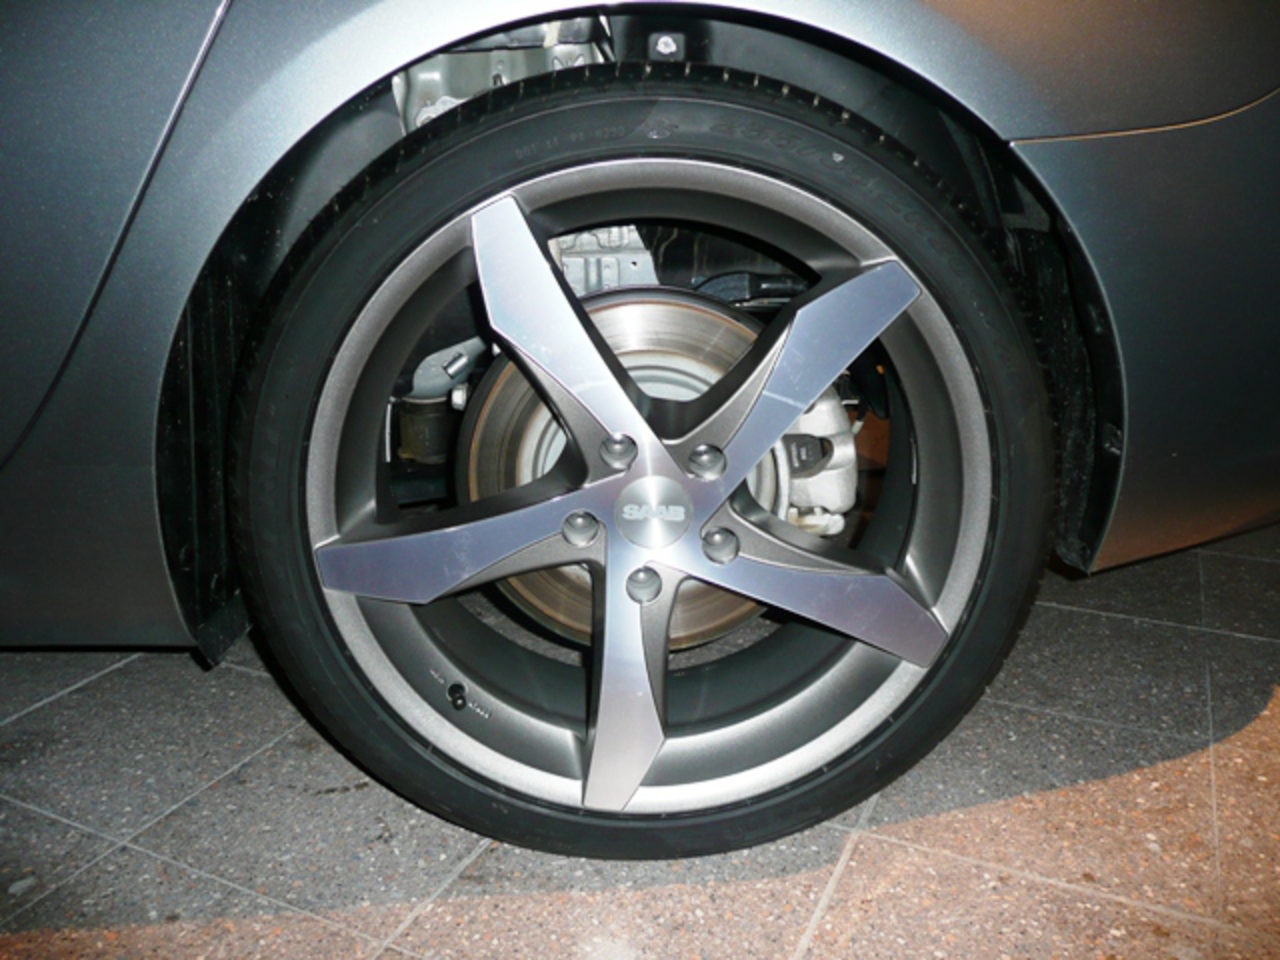 New 20-inch wheels for Saab 9-5 | SAABSUNITED